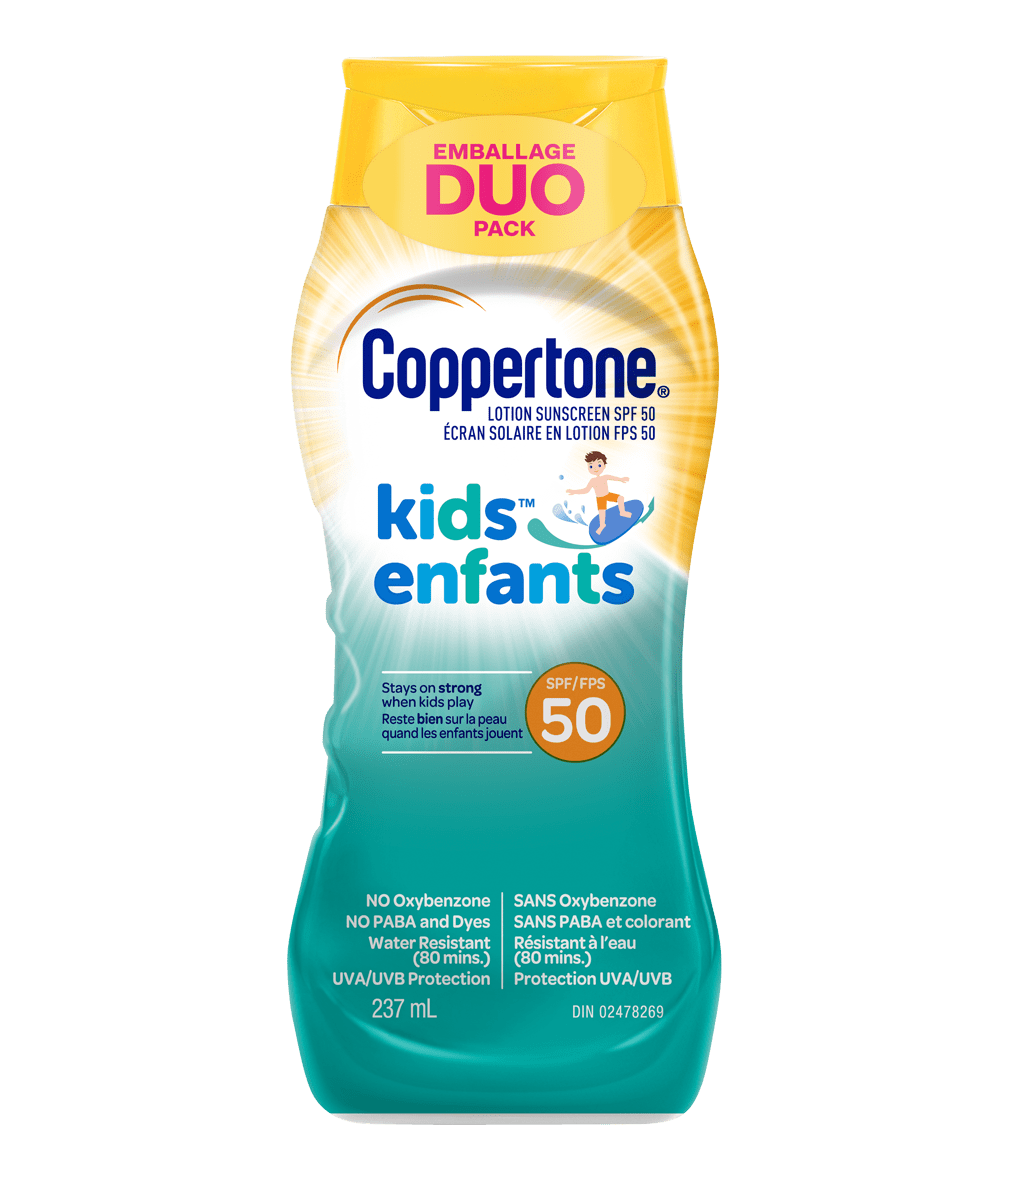 Coppertone® Écran solaire en lotion pour enfants FPS50, Duo